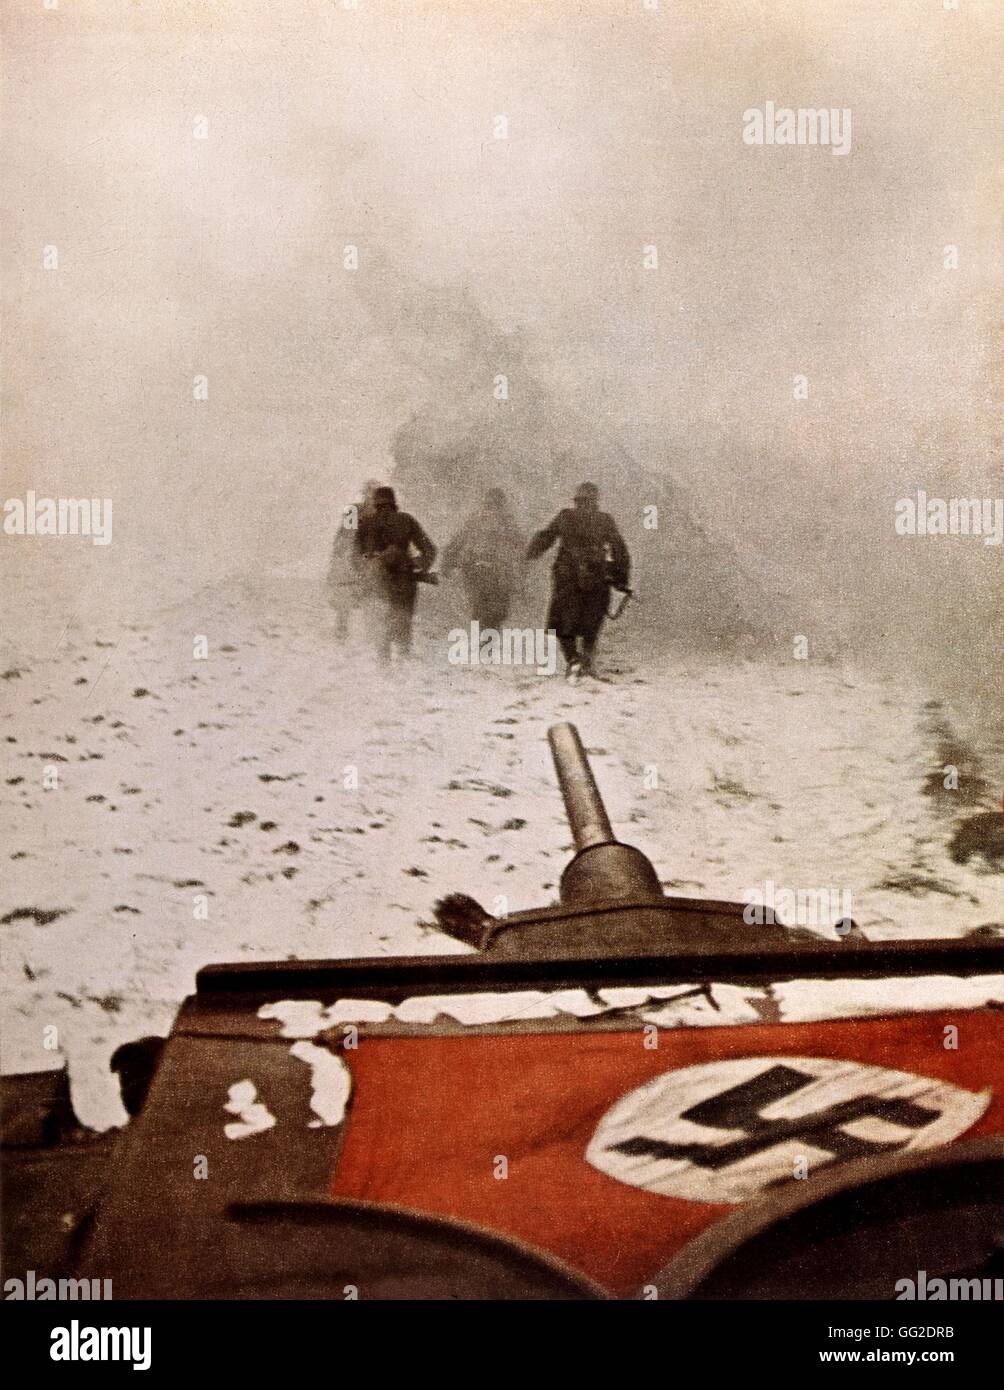 Photo A. Grimm agression d'infrantrymen allemand sur le front soviétique, dans 'Signal' 1942 URSS - Seconde Guerre mondiale Banque D'Images